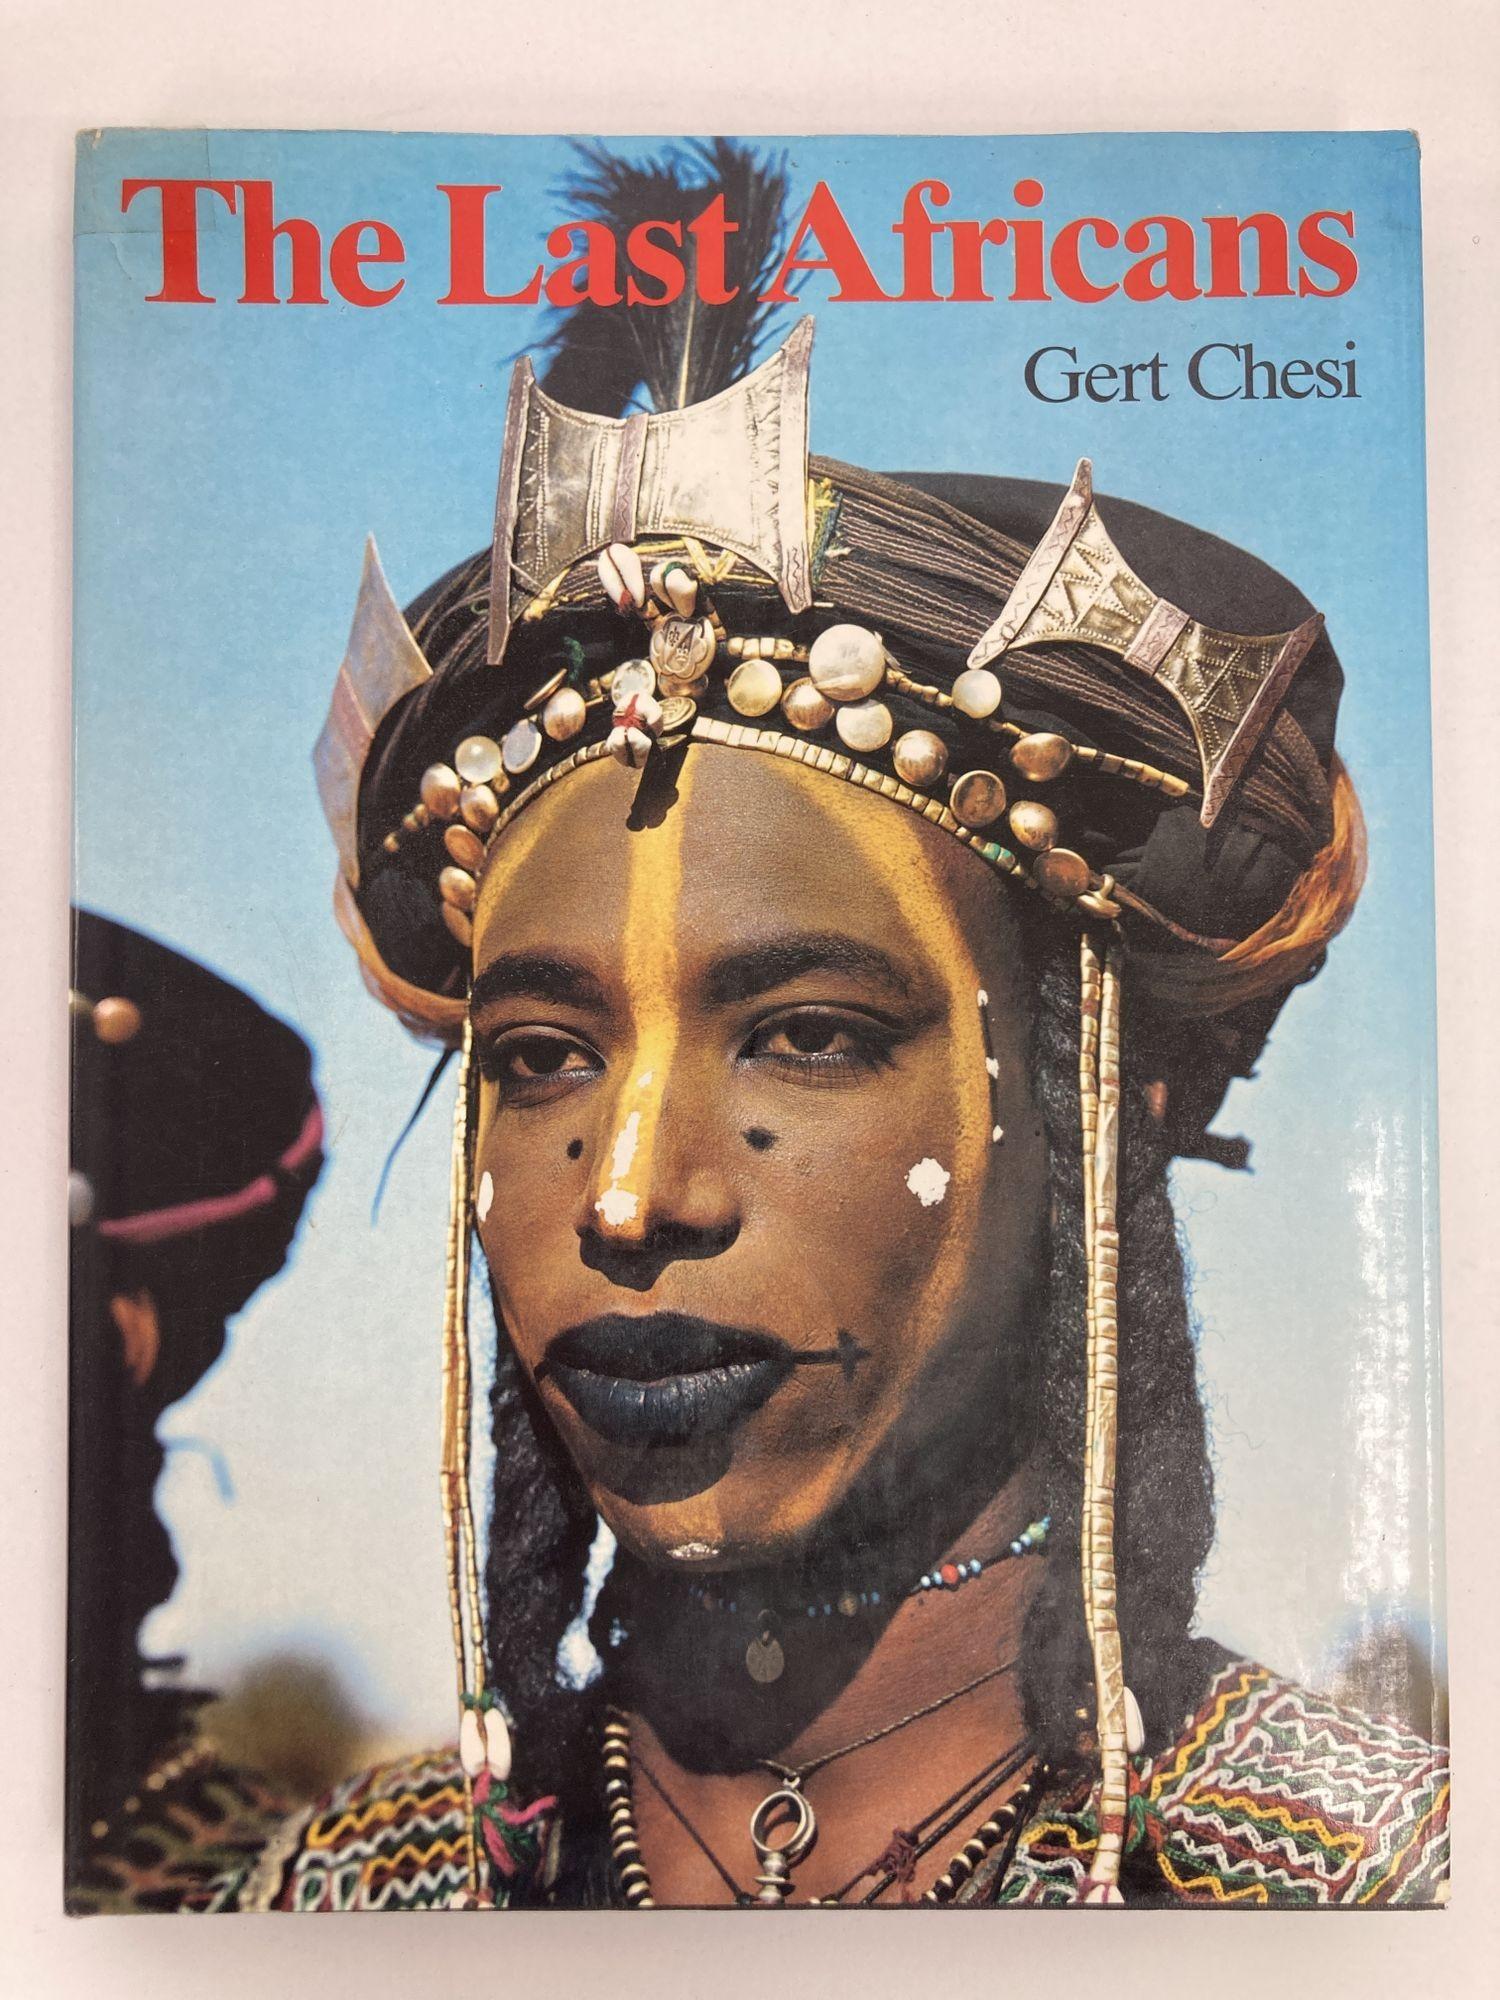 Les derniers Africains Gert Chesi Perlinger Livre relié 1981
Publié par Perlinger-Verlag, Worgl Autriche, 1981
Copieusement illustré en couleur et en noir et blanc. Un bel exemplaire dans un dj un peu sali et déchiré. L'auteur s'est concentré sur